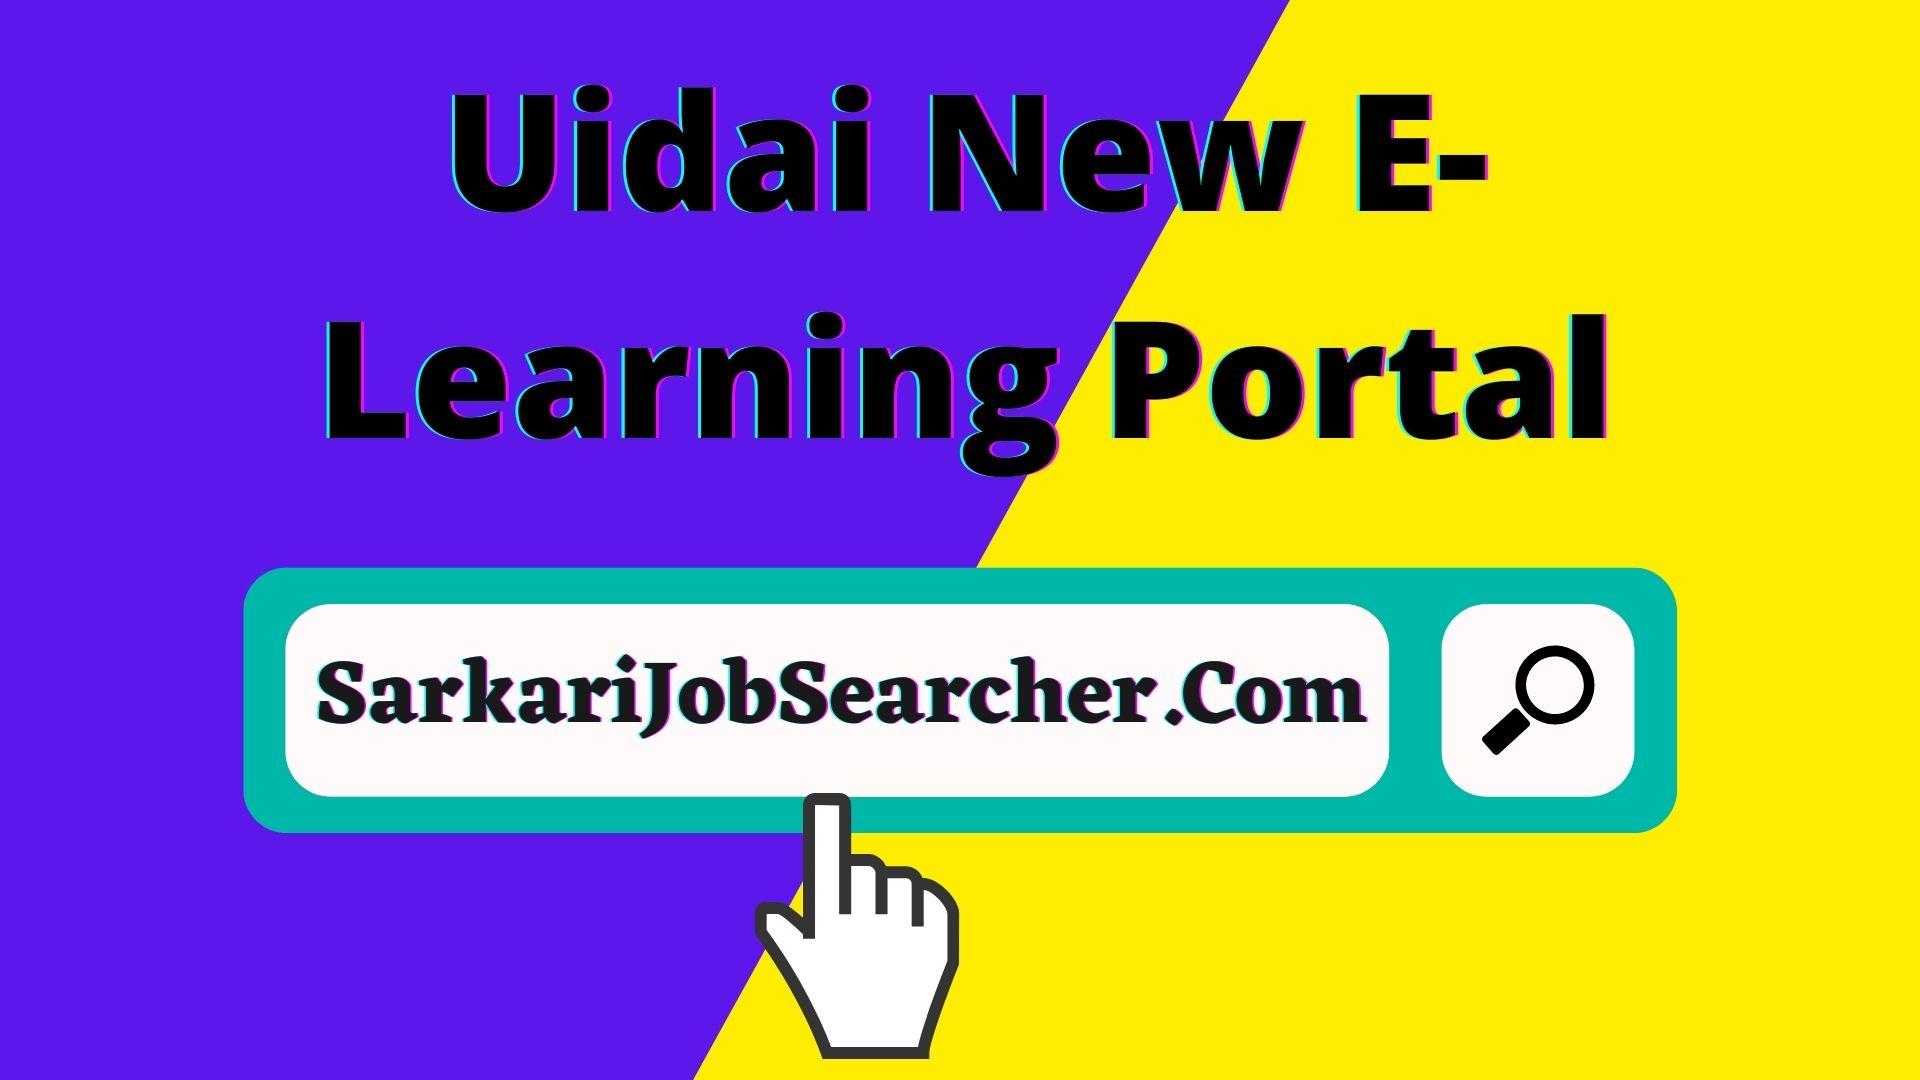 Uidai New E-Learning Portal